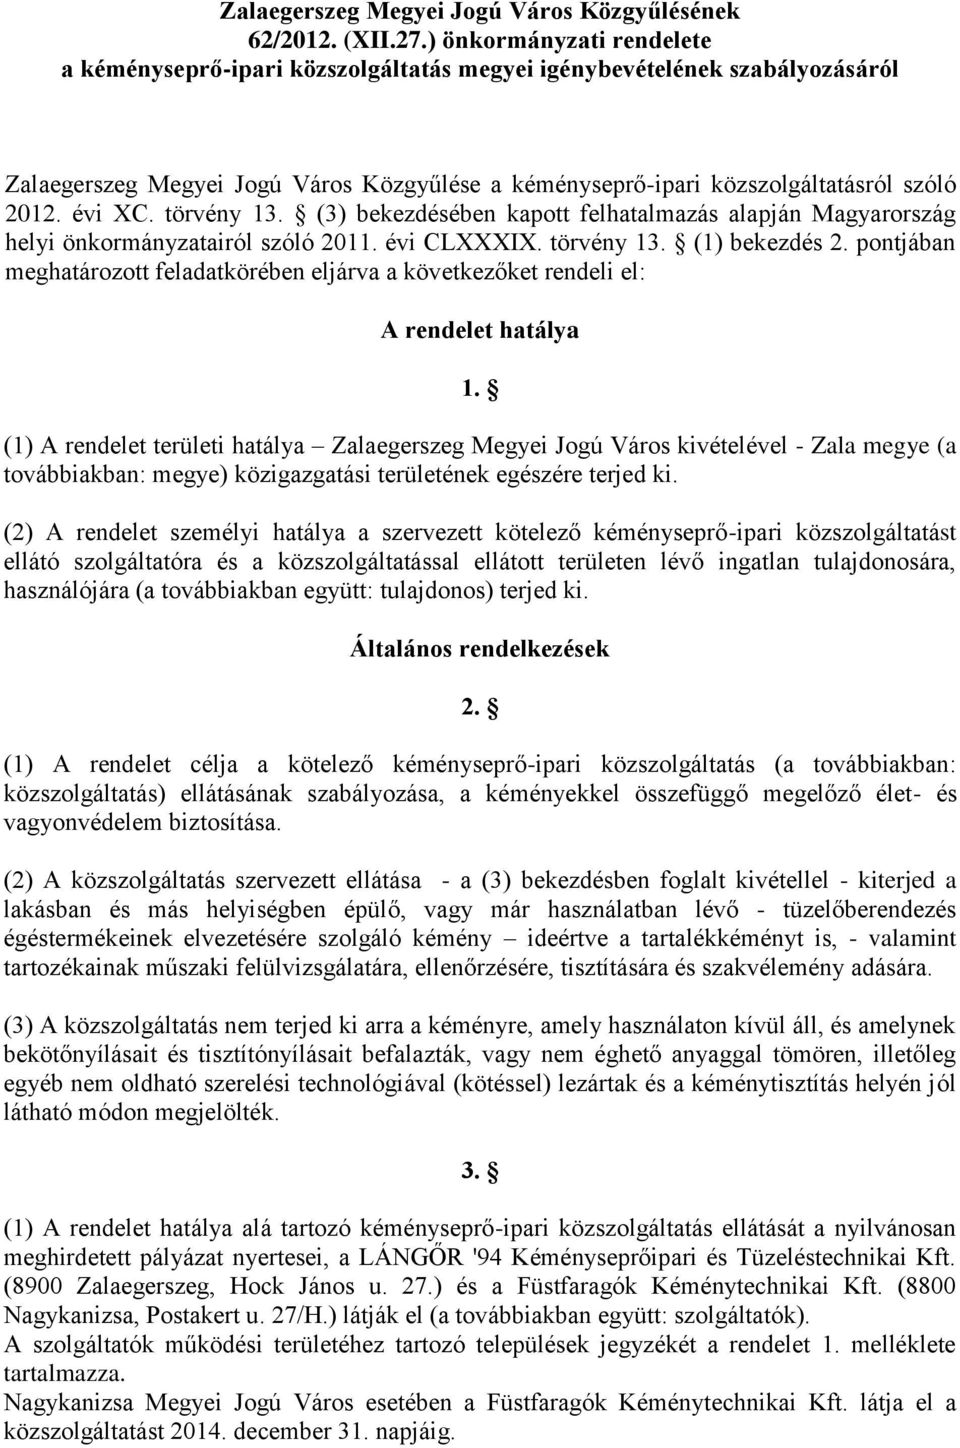 évi XC. törvény 13. (3) bekezdésében kapott felhatalmazás alapján Magyarország helyi önkormányzatairól szóló 2011. évi CLXXXIX. törvény 13. (1) bekezdés 2.